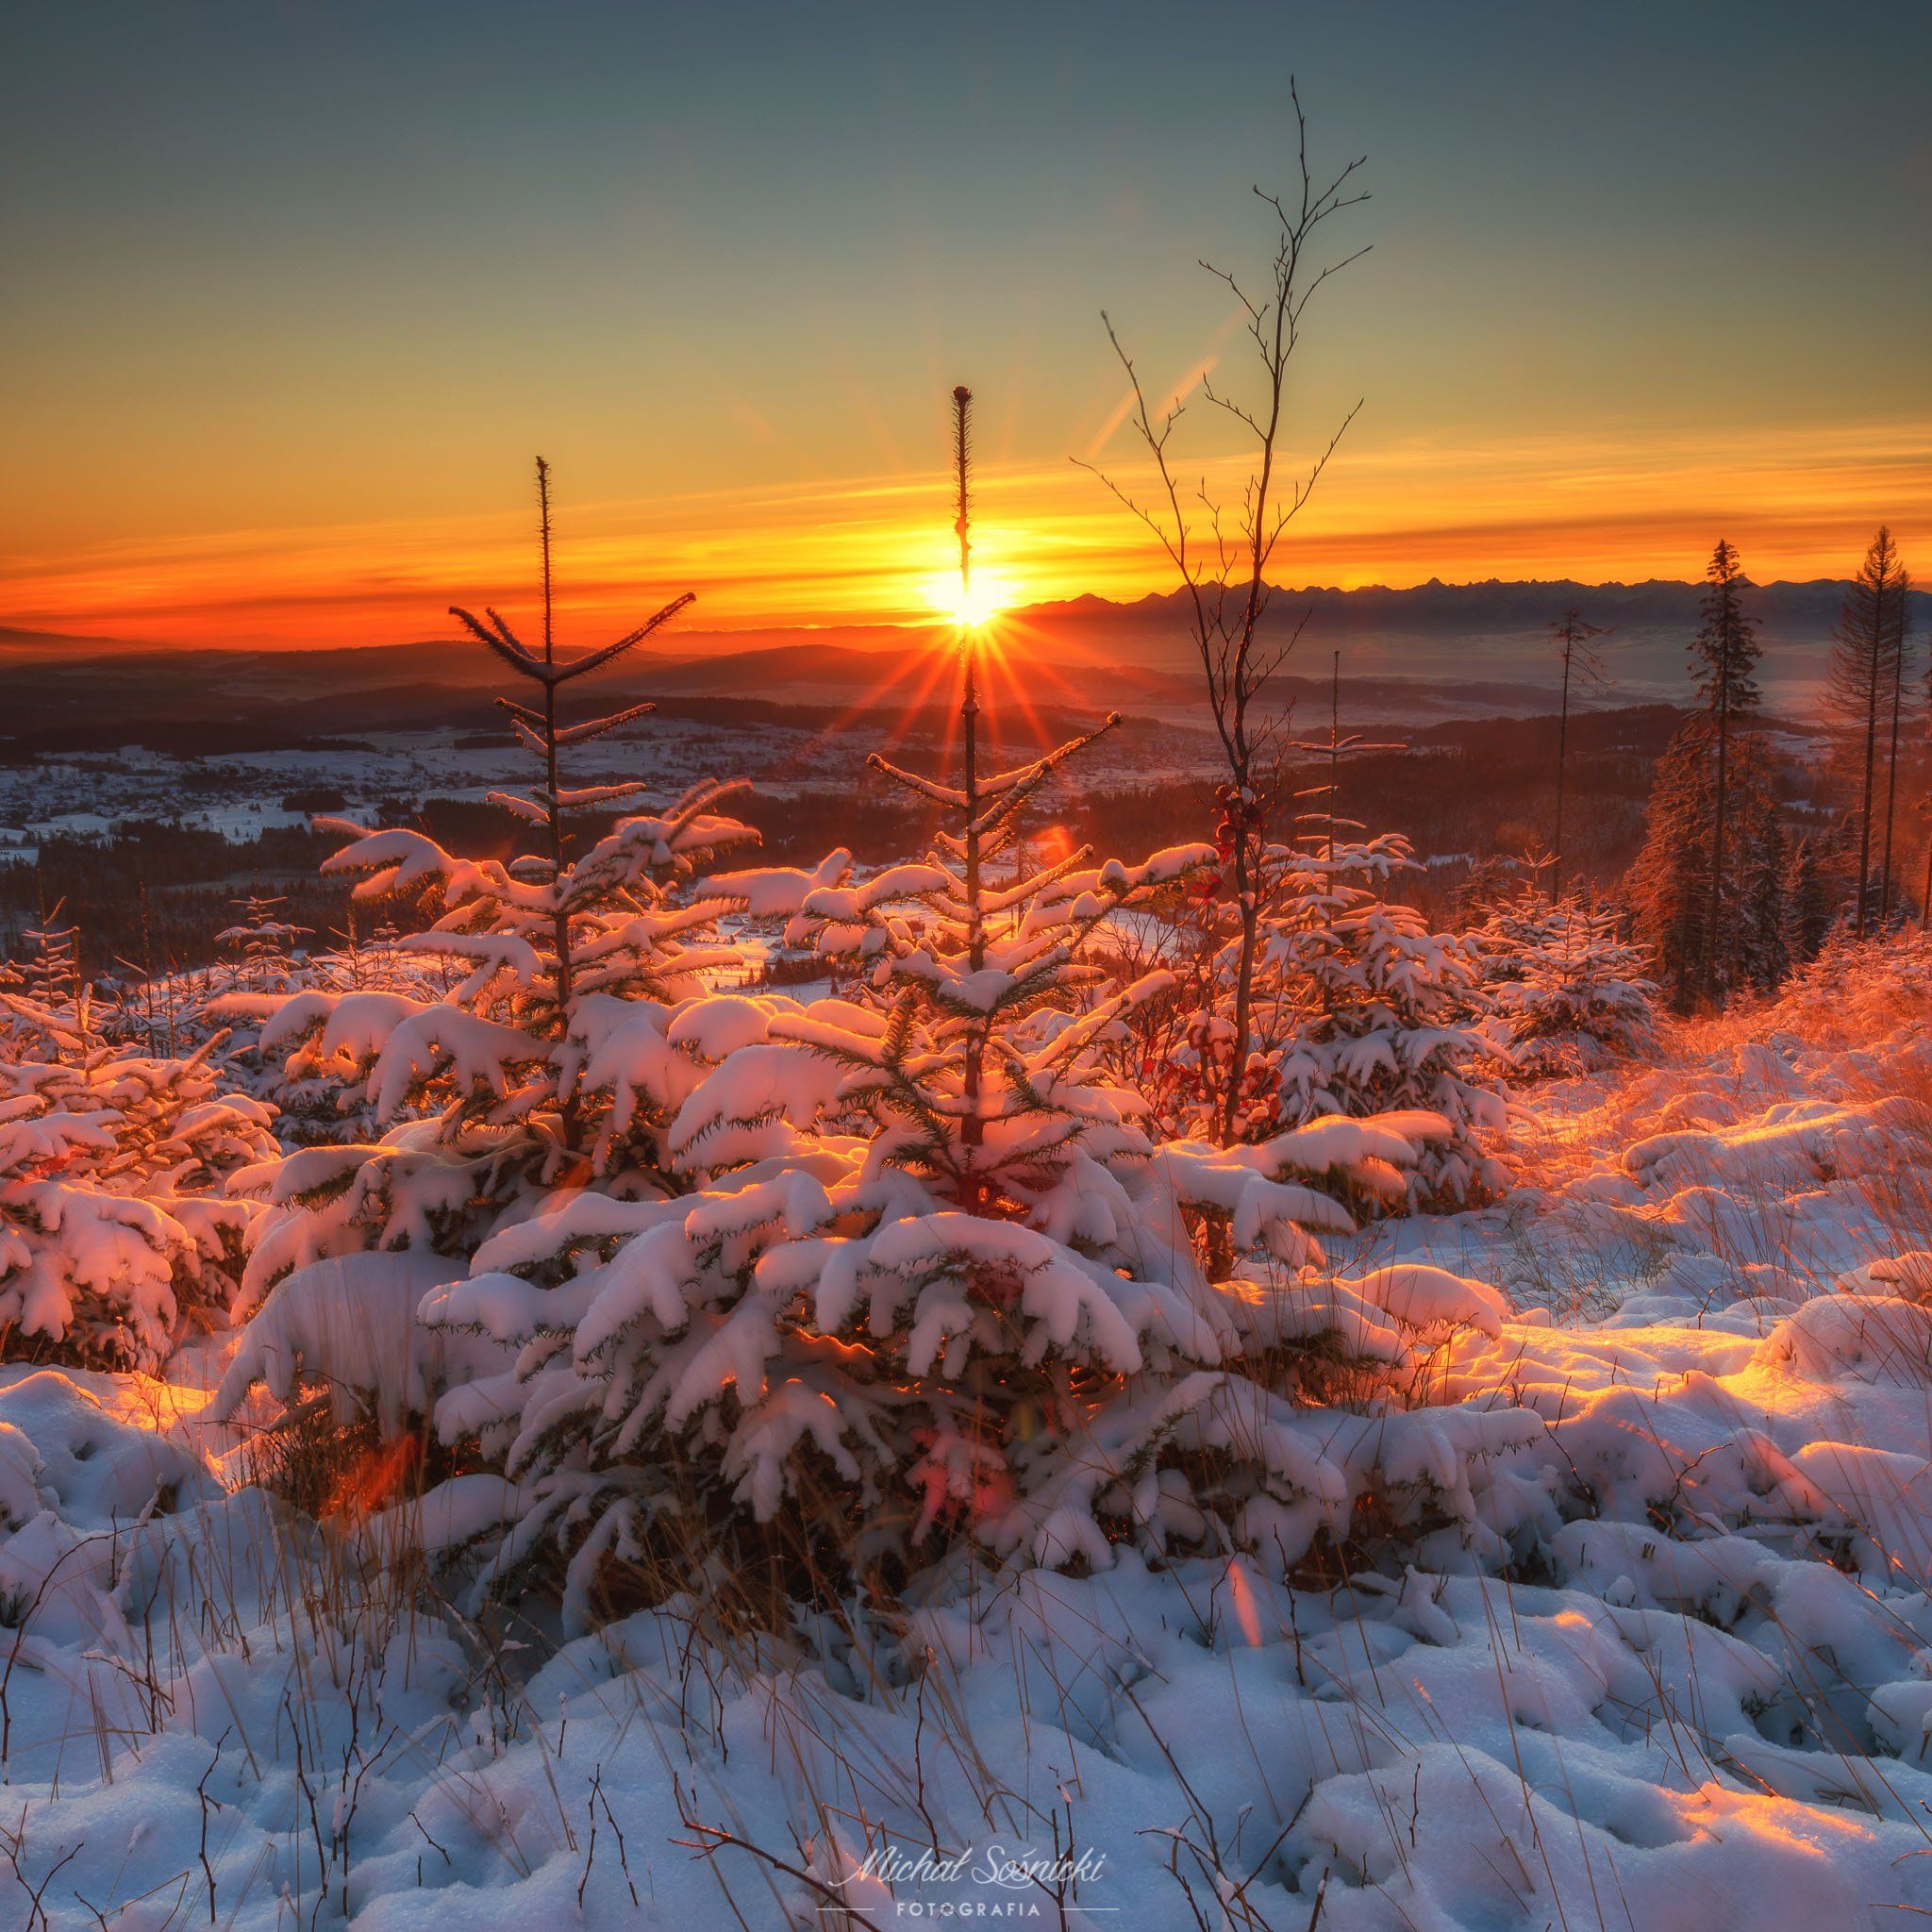 #sunrise #tree #poland #sky #clouds #light #highway #pentax #benro #tree #snow #winter, Michał Sośnicki